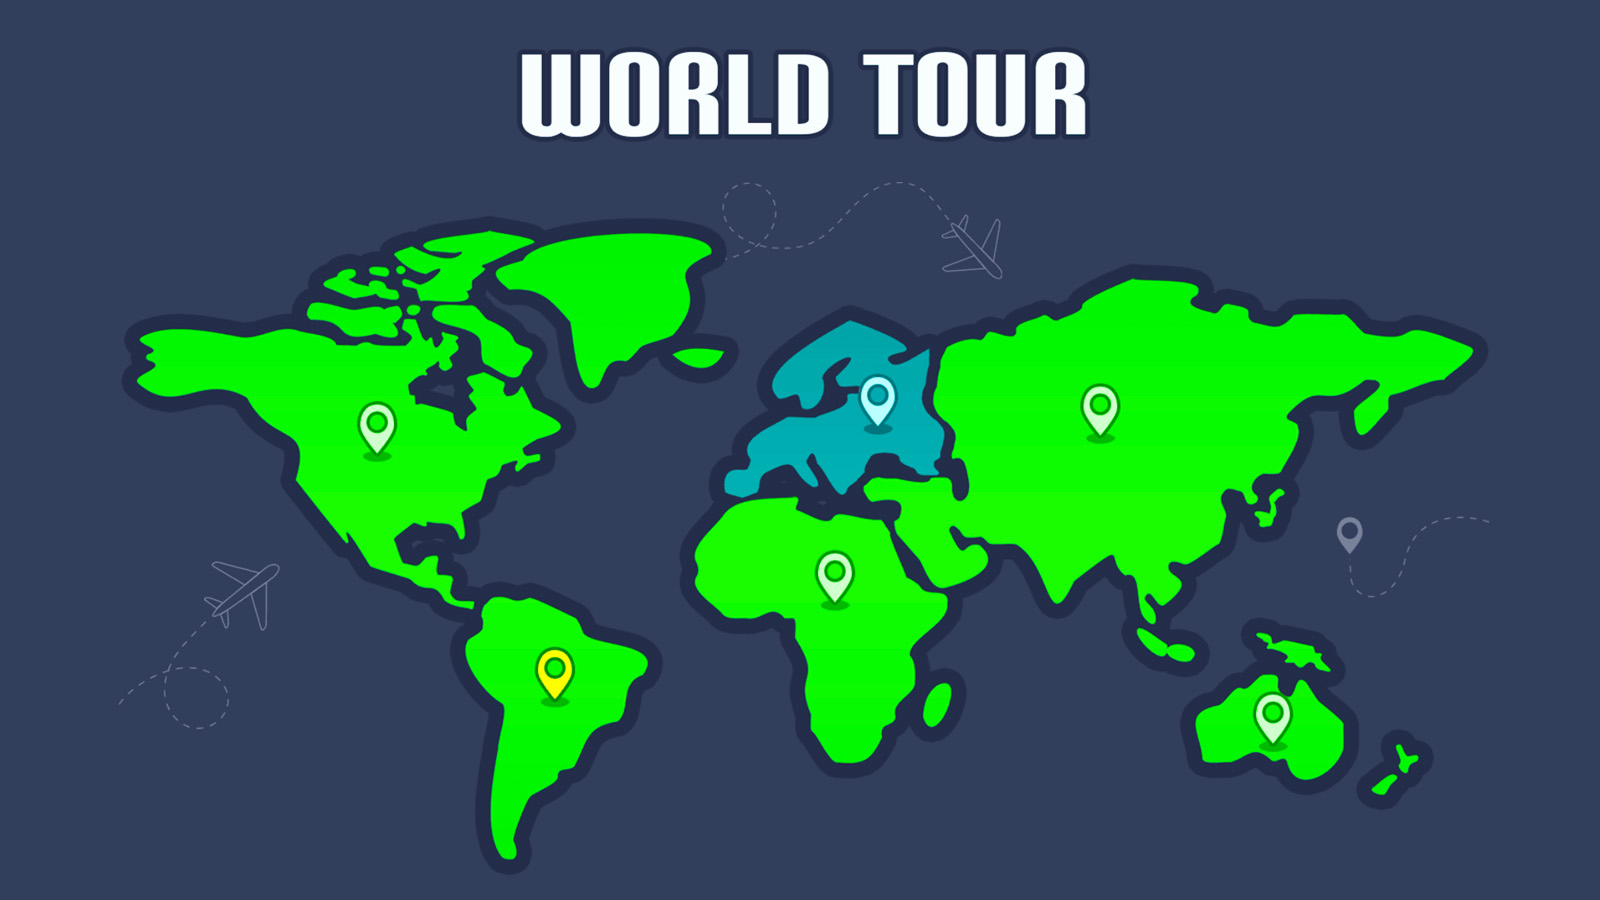 FOOTBALLIER World Tour Event